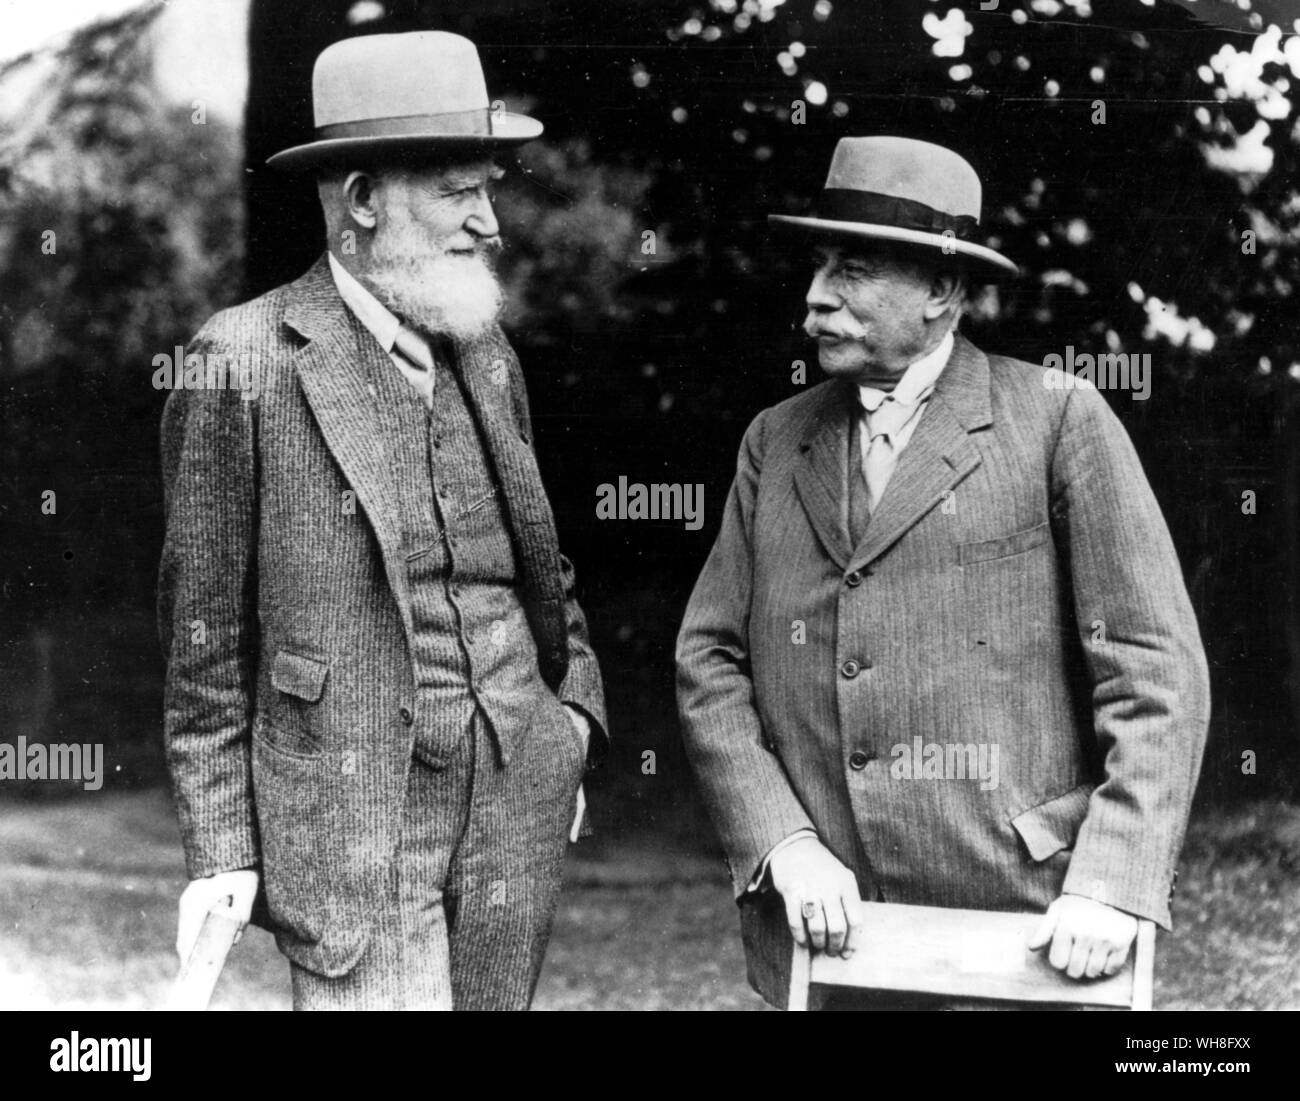 George Bernard Shaw (1856-1950) et de Sir Edward Elgar (1857-1934), compositeur au premier Festival de Malvern en 1929. Shaw a été un dramaturge irlandais et lauréat du Prix Nobel de Littérature en 1925. Le génie de Shaw page 77. Banque D'Images